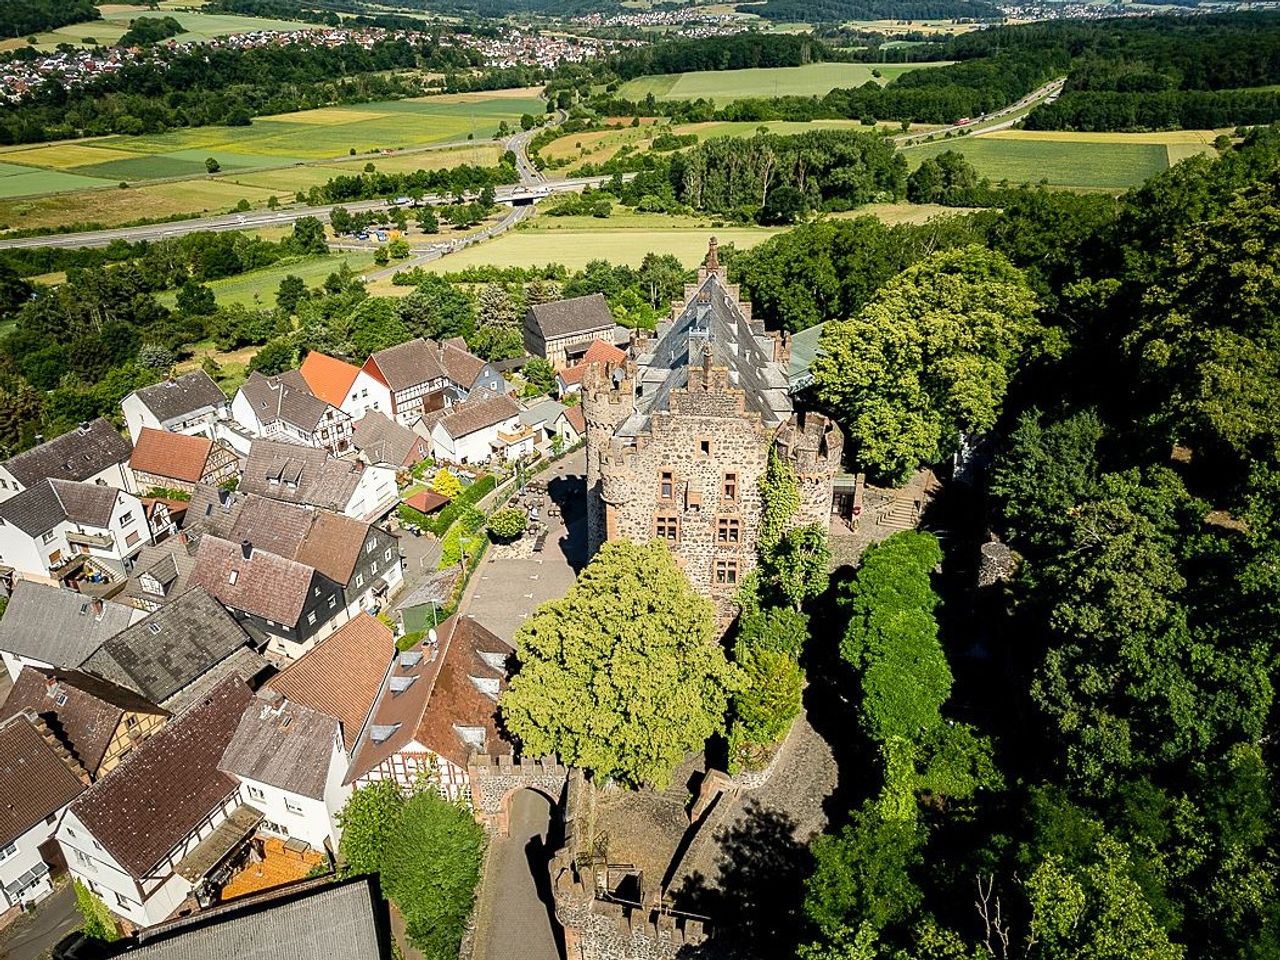 Familientage auf Burg Staufenberg (4 Personen)